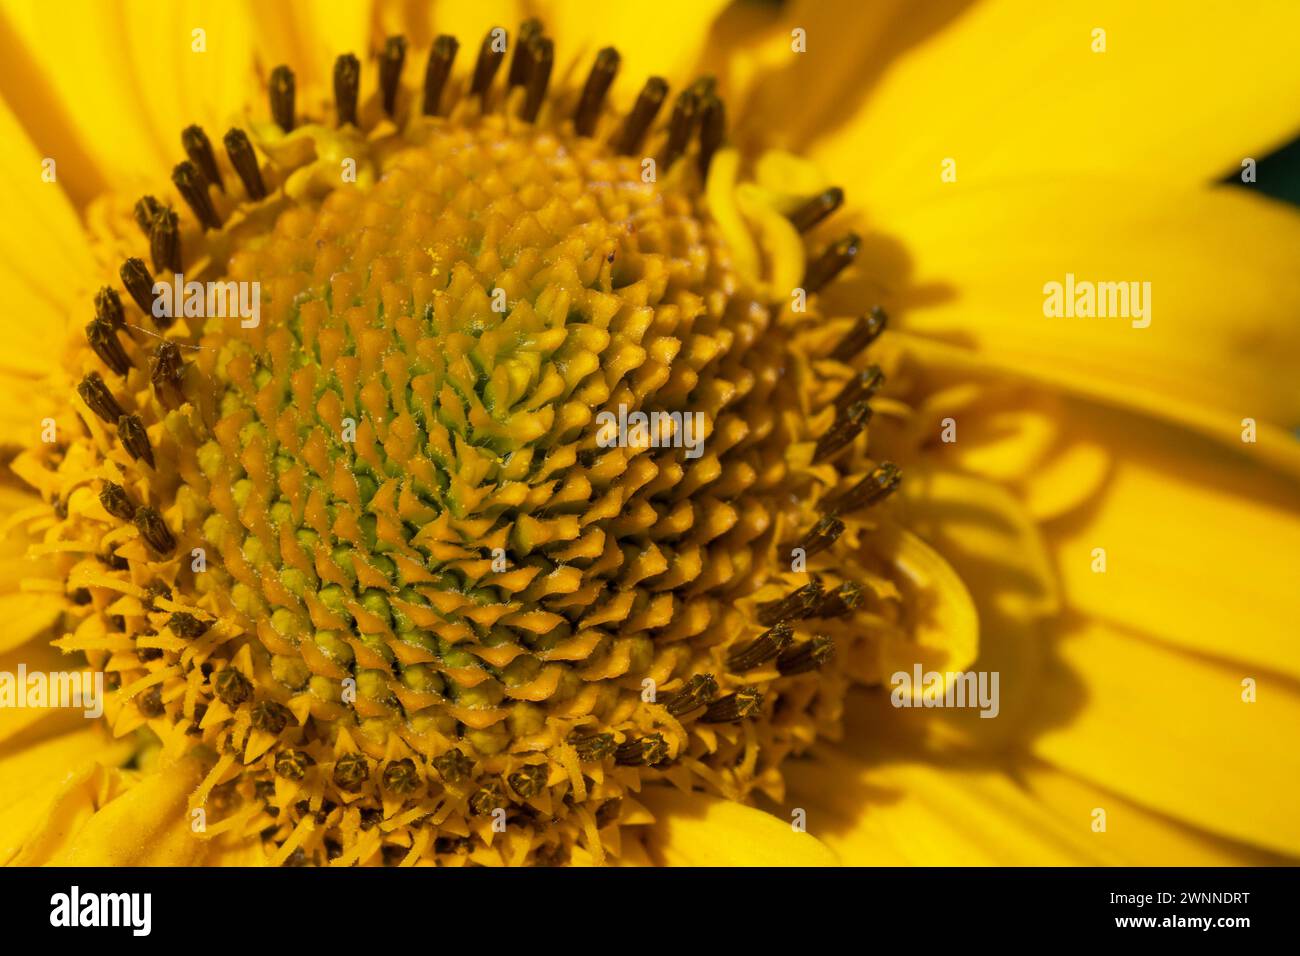 Gros plan du centre d’une fleur jaune, montrant une texture détaillée et des motifs avec des graines visibles. Banque D'Images